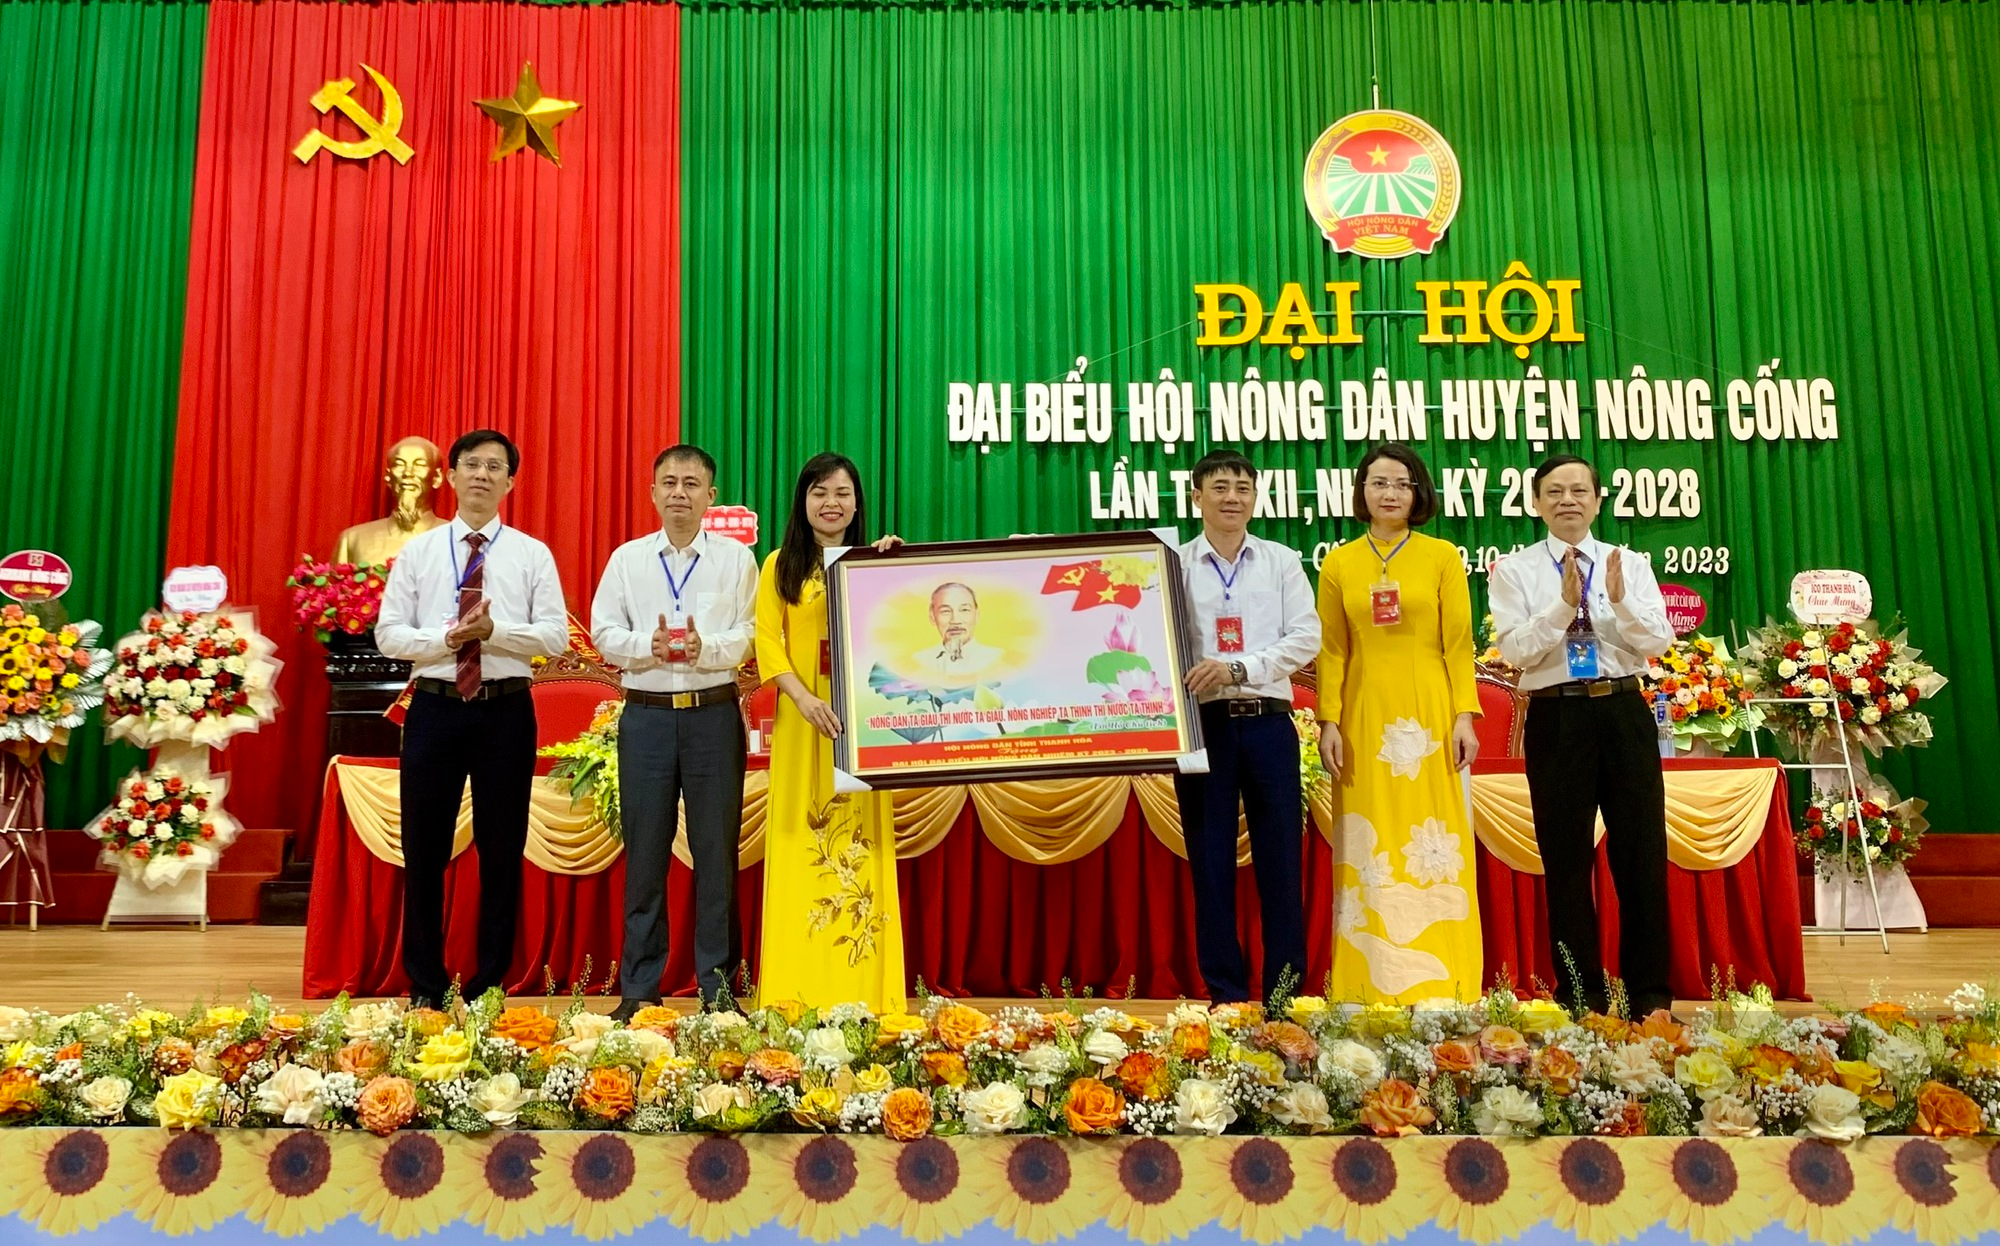 Đại hội đại biểu Hội Nông dân huyện Nông Cống, bà Trần Thị Huế tái cử Chủ tịch - Ảnh 2.